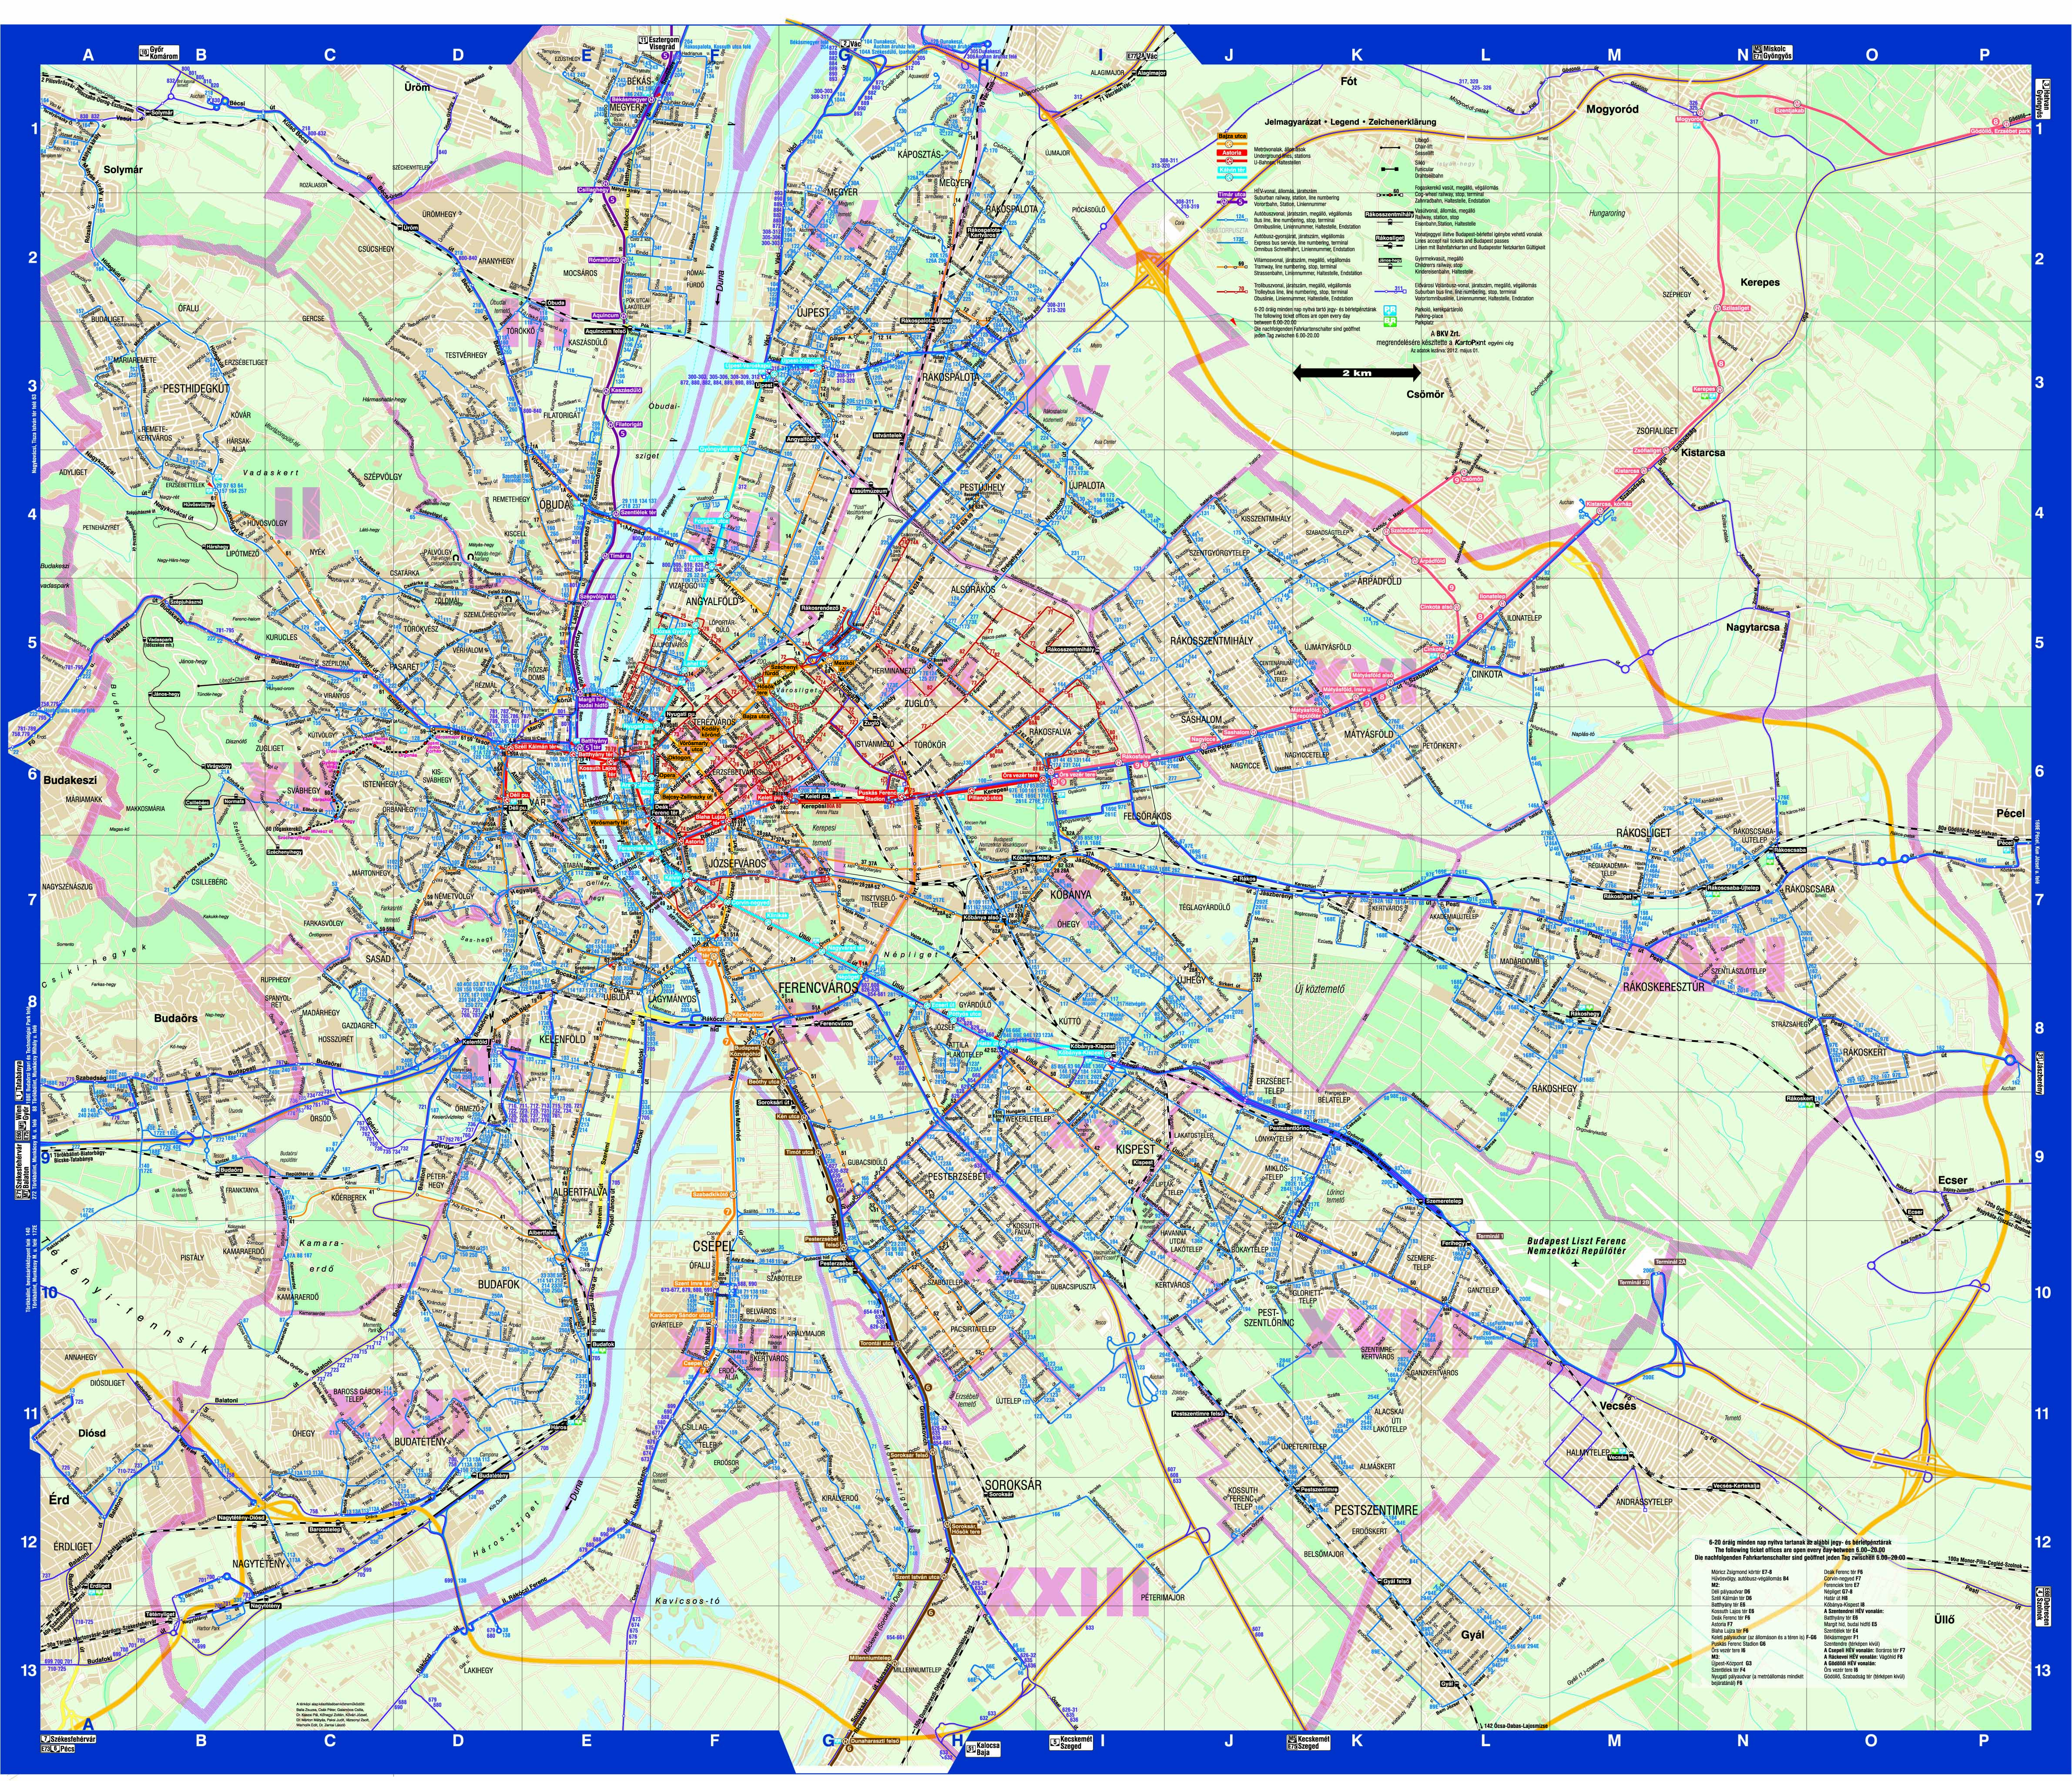 bp térkép tömegközlekedéssel Budapest közösségi közlekekedésének utasterheltsége bp térkép tömegközlekedéssel